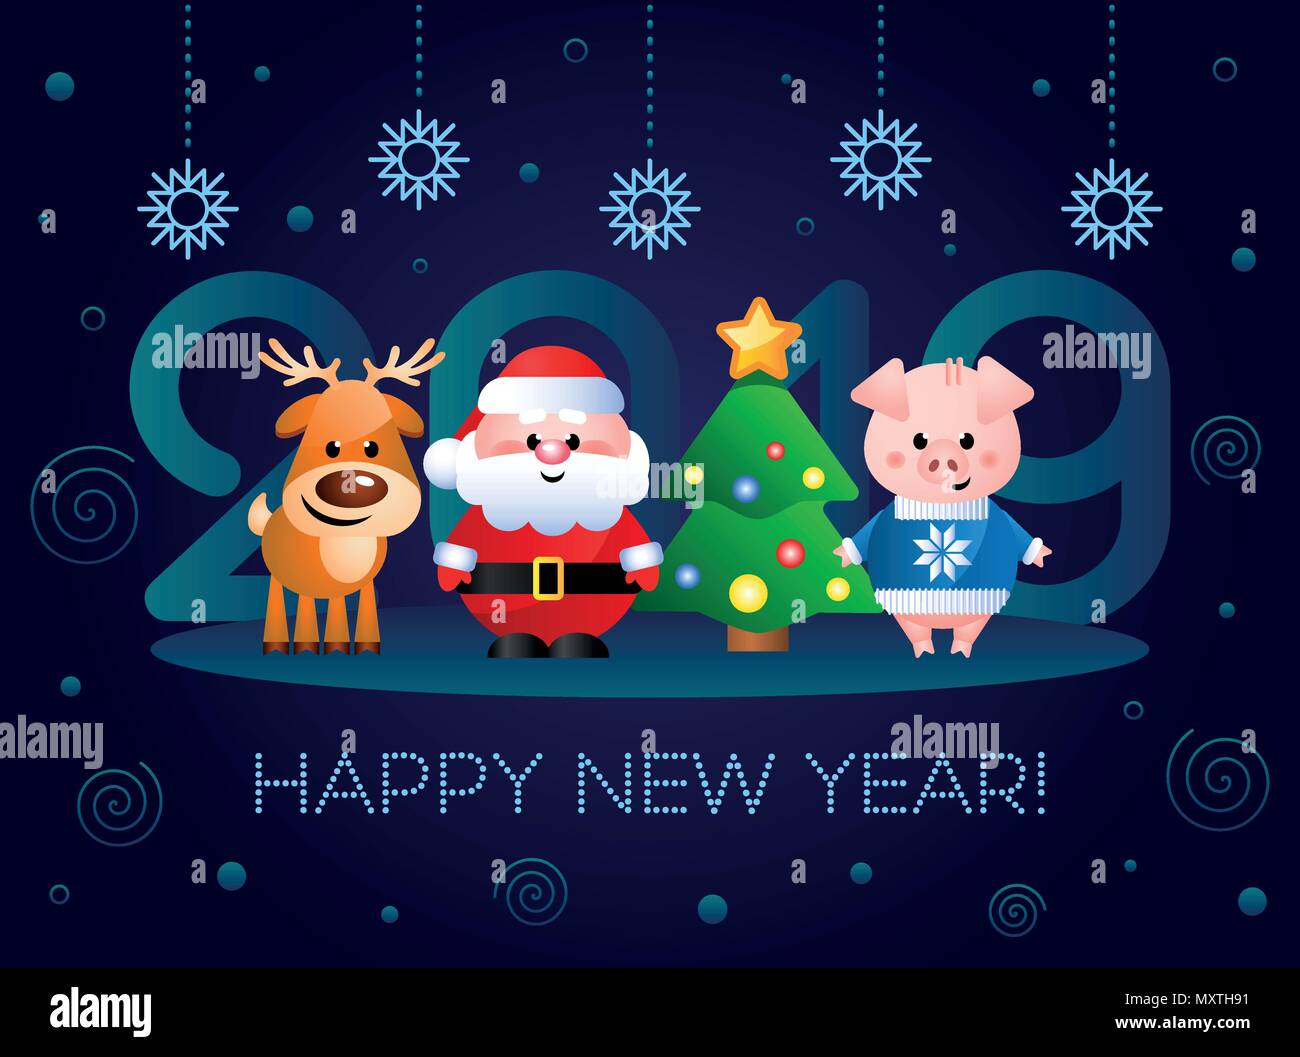 Felice Anno Nuovo 2019! Biglietto di auguri con simpatici personaggi dei cartoni animati. Babbo Natale, maiale e renne con albero di Natale. Illustrazione Vettoriale. Illustrazione Vettoriale